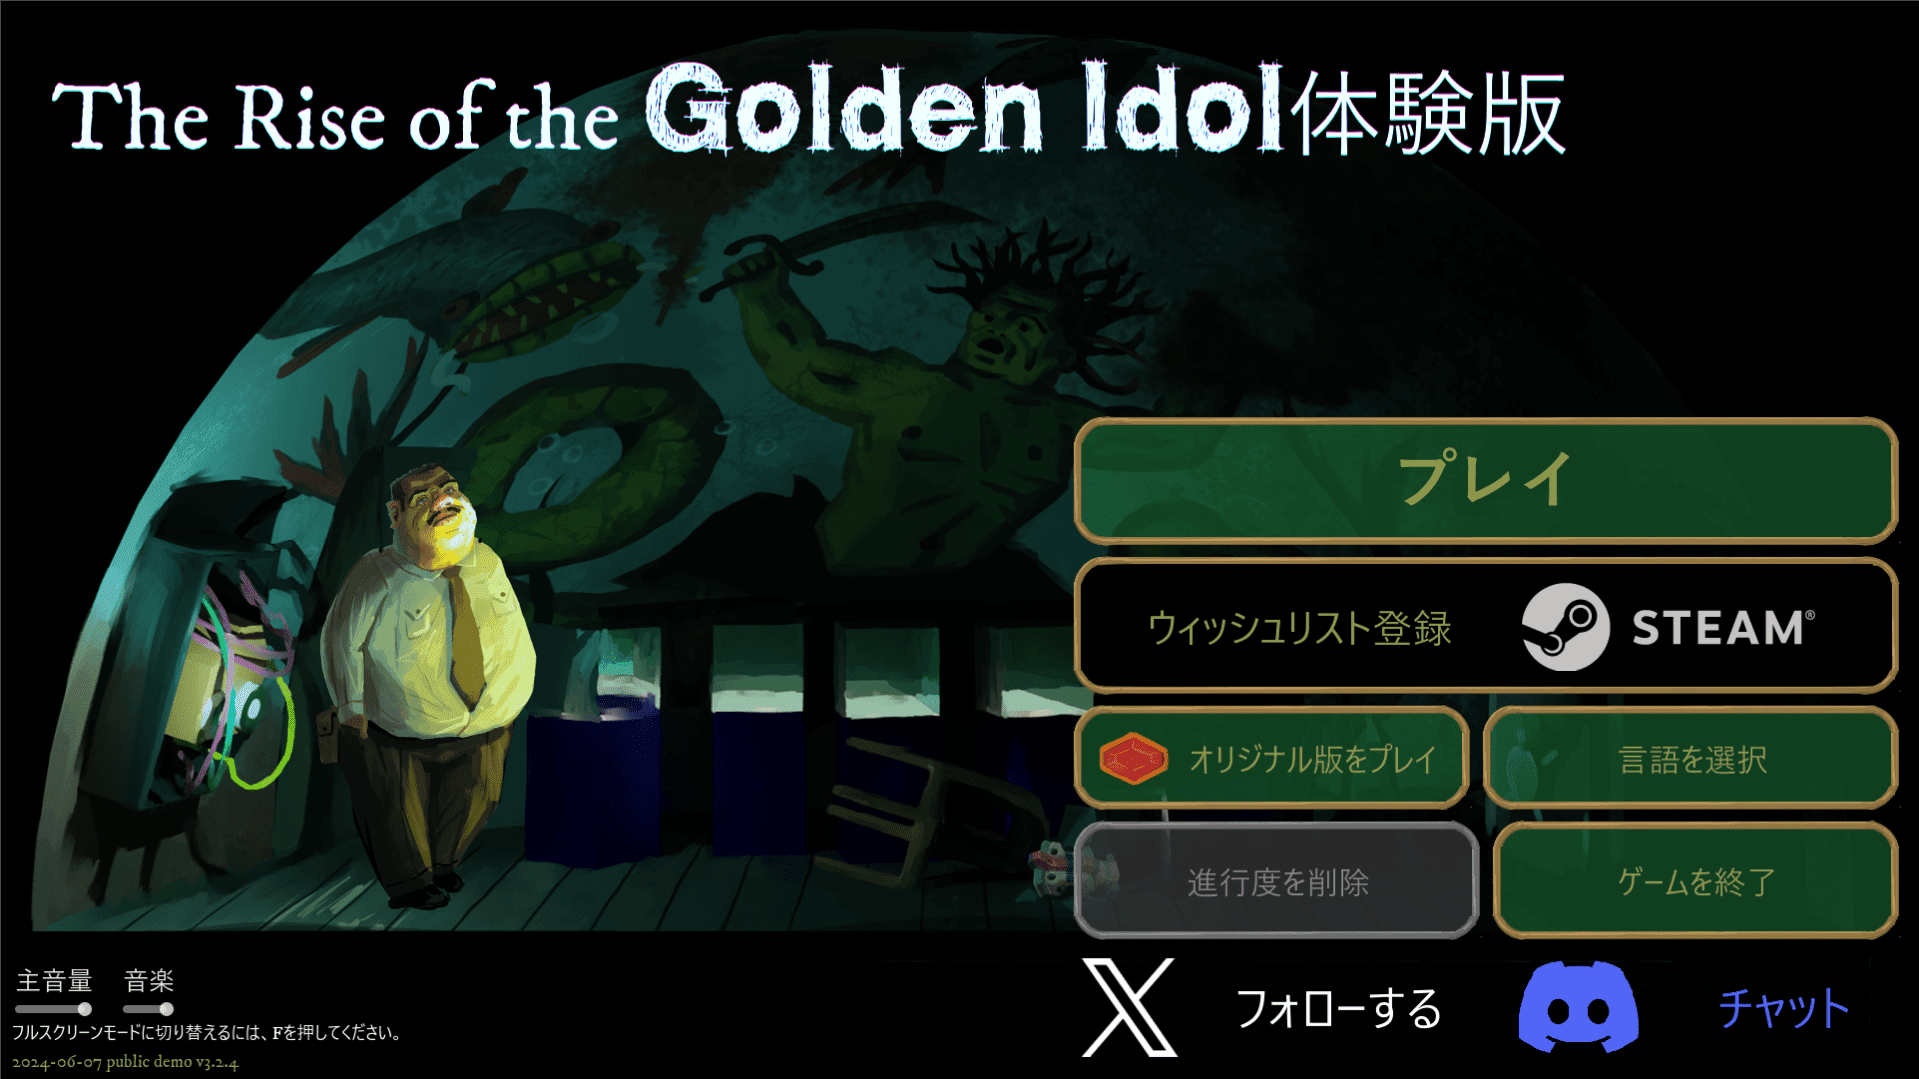 とにかく謎解きが面白い高評価ゲームの続編『The Rise of the Golden Idol』日本語対応の無料体験版が公開_002